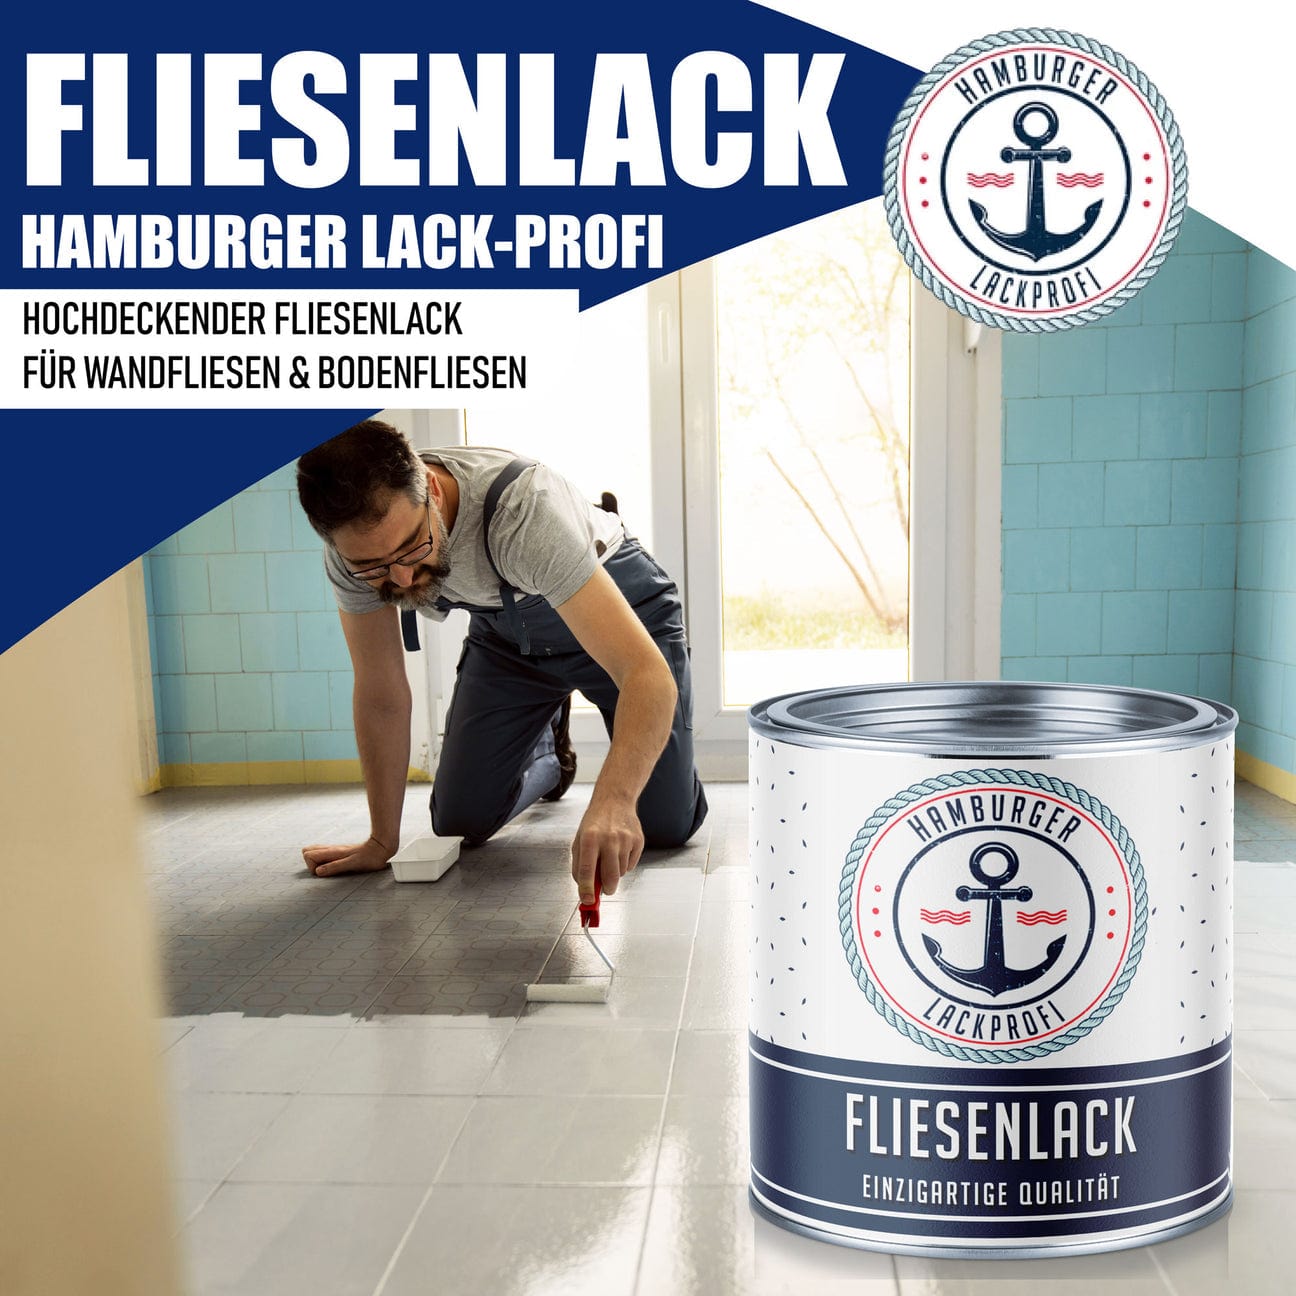 Hamburger Lack-Profi Lacke & Beschichtungen Hamburger Lack-Profi Fliesenlack Maigrün RAL 6017- hochdeckende Fliesenfarbe Grün